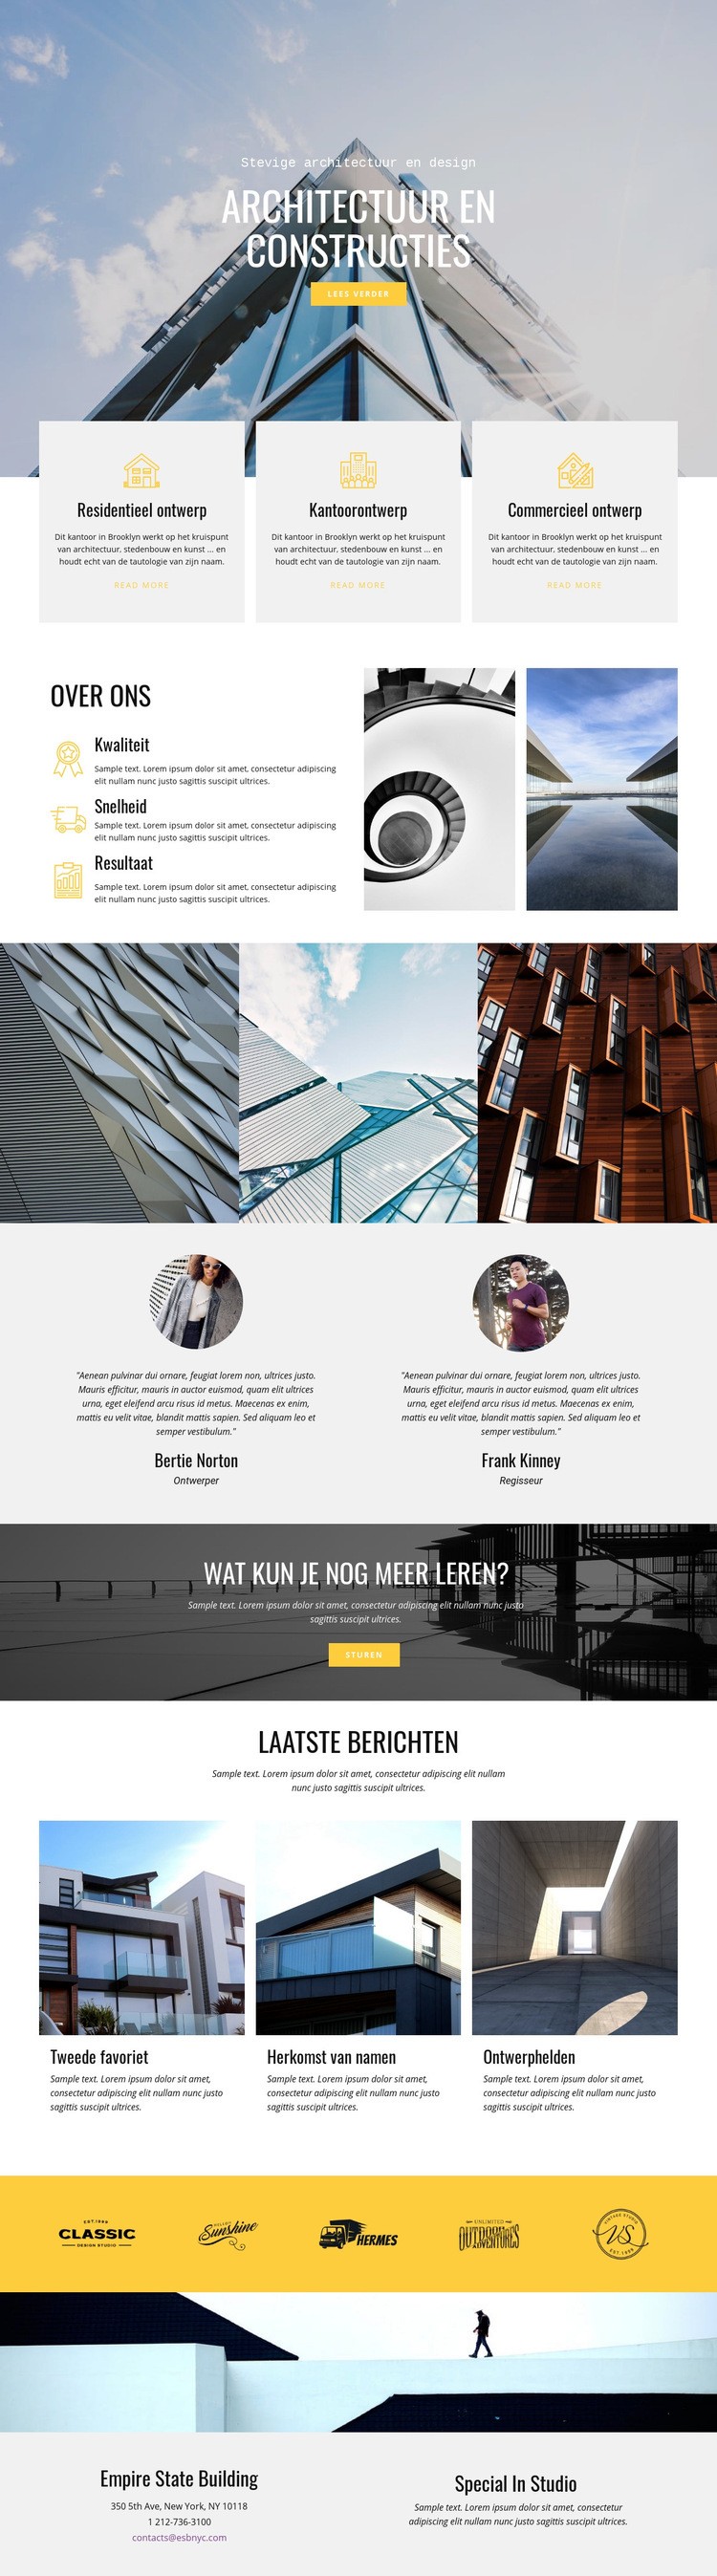 Constructieve architectuur Website ontwerp